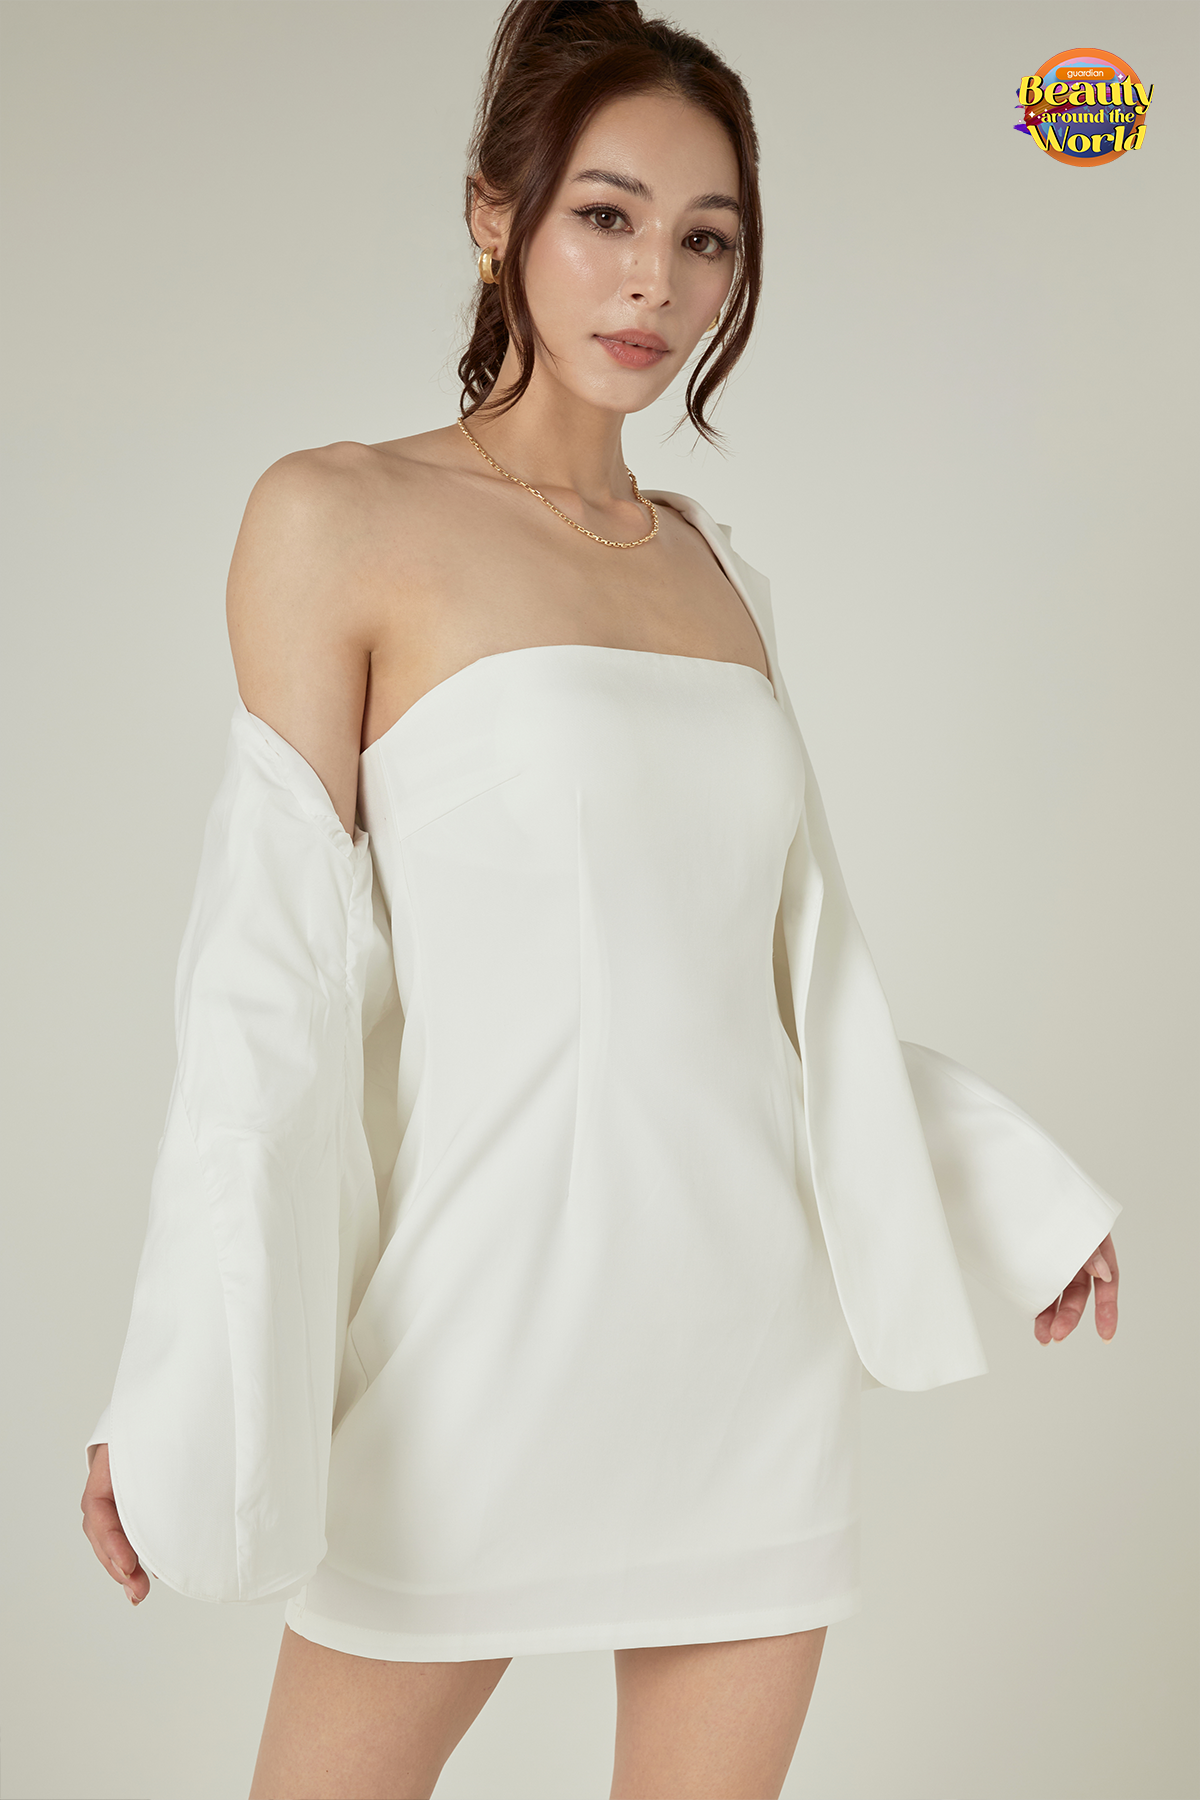 Issa Sculptor Dress (White)